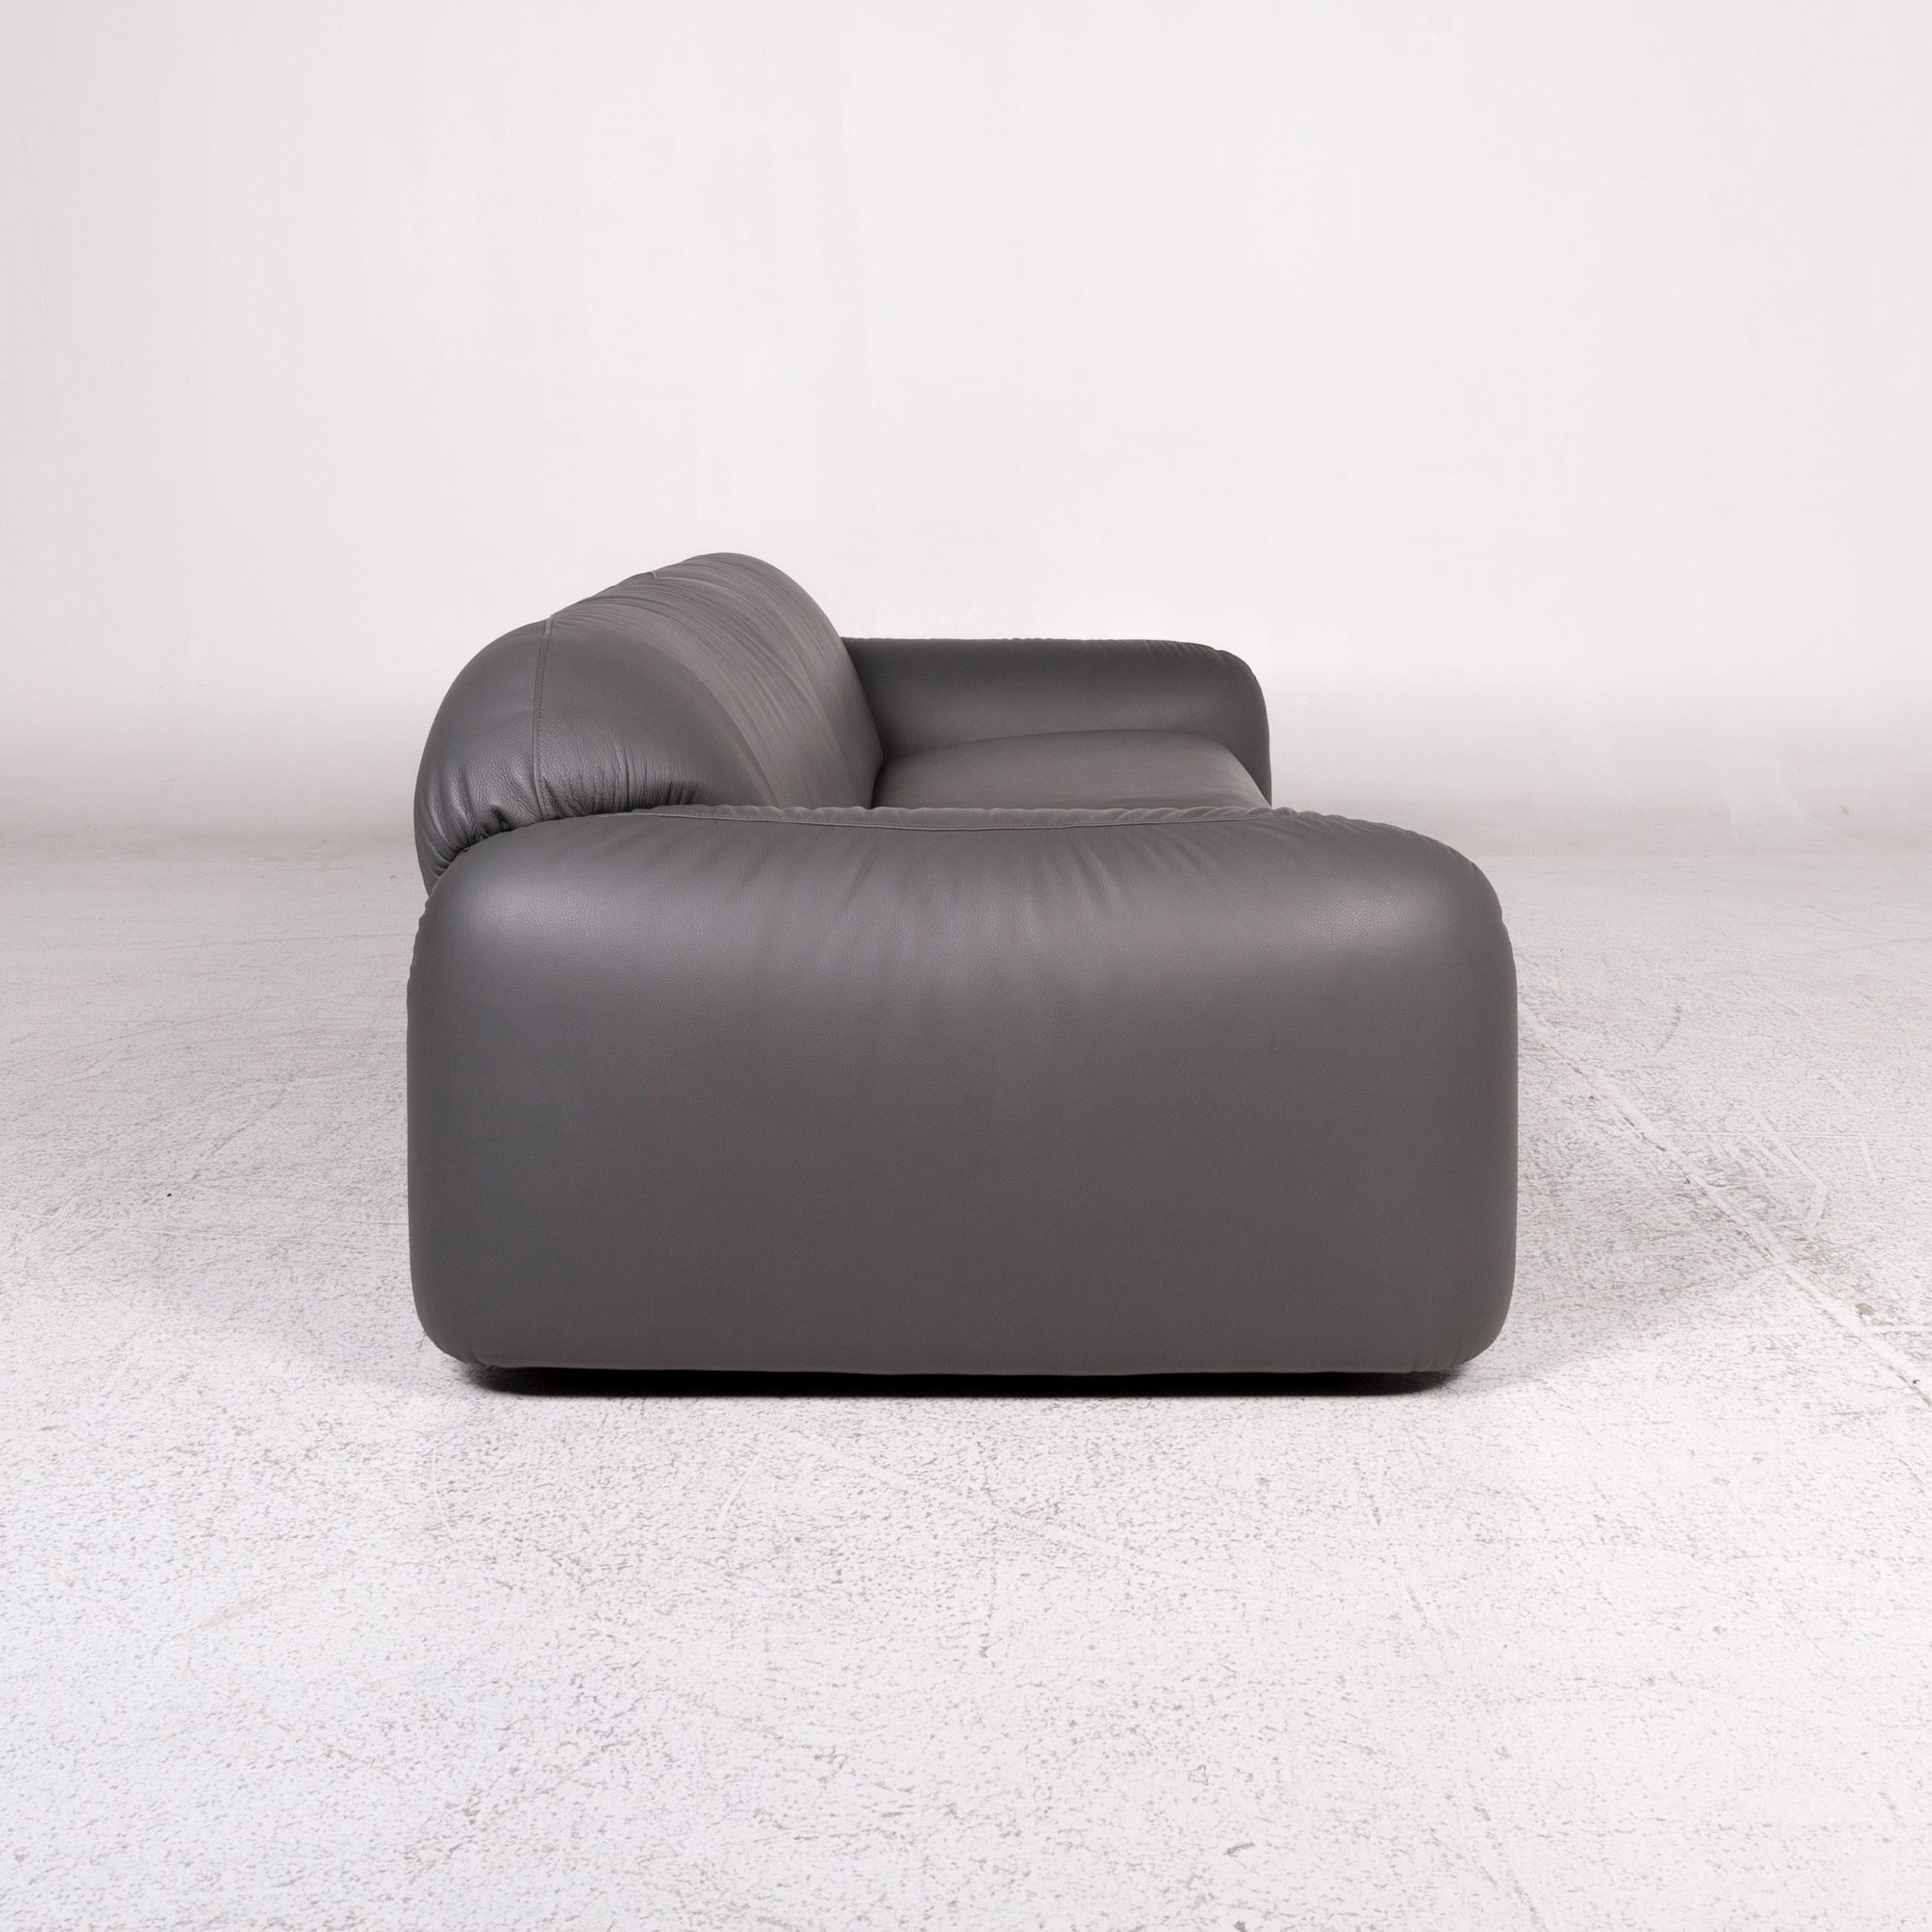 Contemporary Busnelli Piumotto Leather Sofa Gray Three-Seat Marco Boga Couch